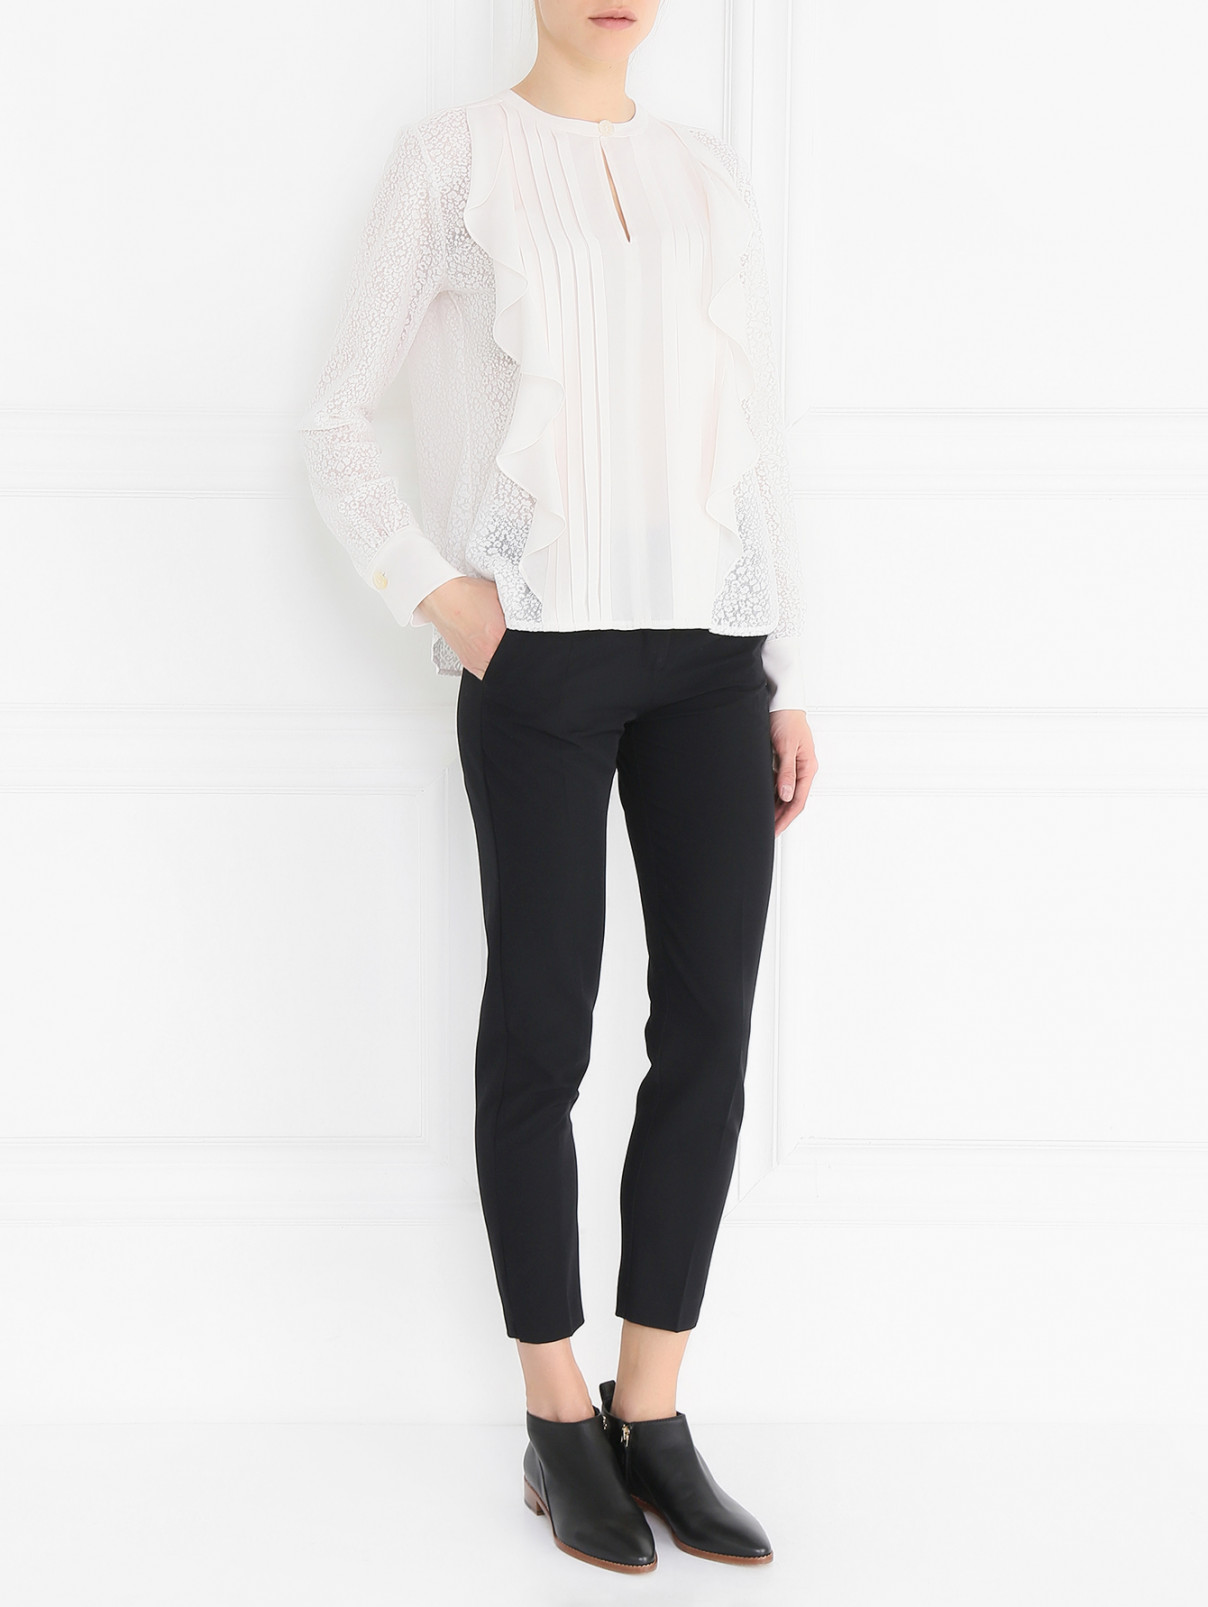 Полупрозрачная блуза с рюшами See by Chloe  –  Модель Общий вид  – Цвет:  Белый